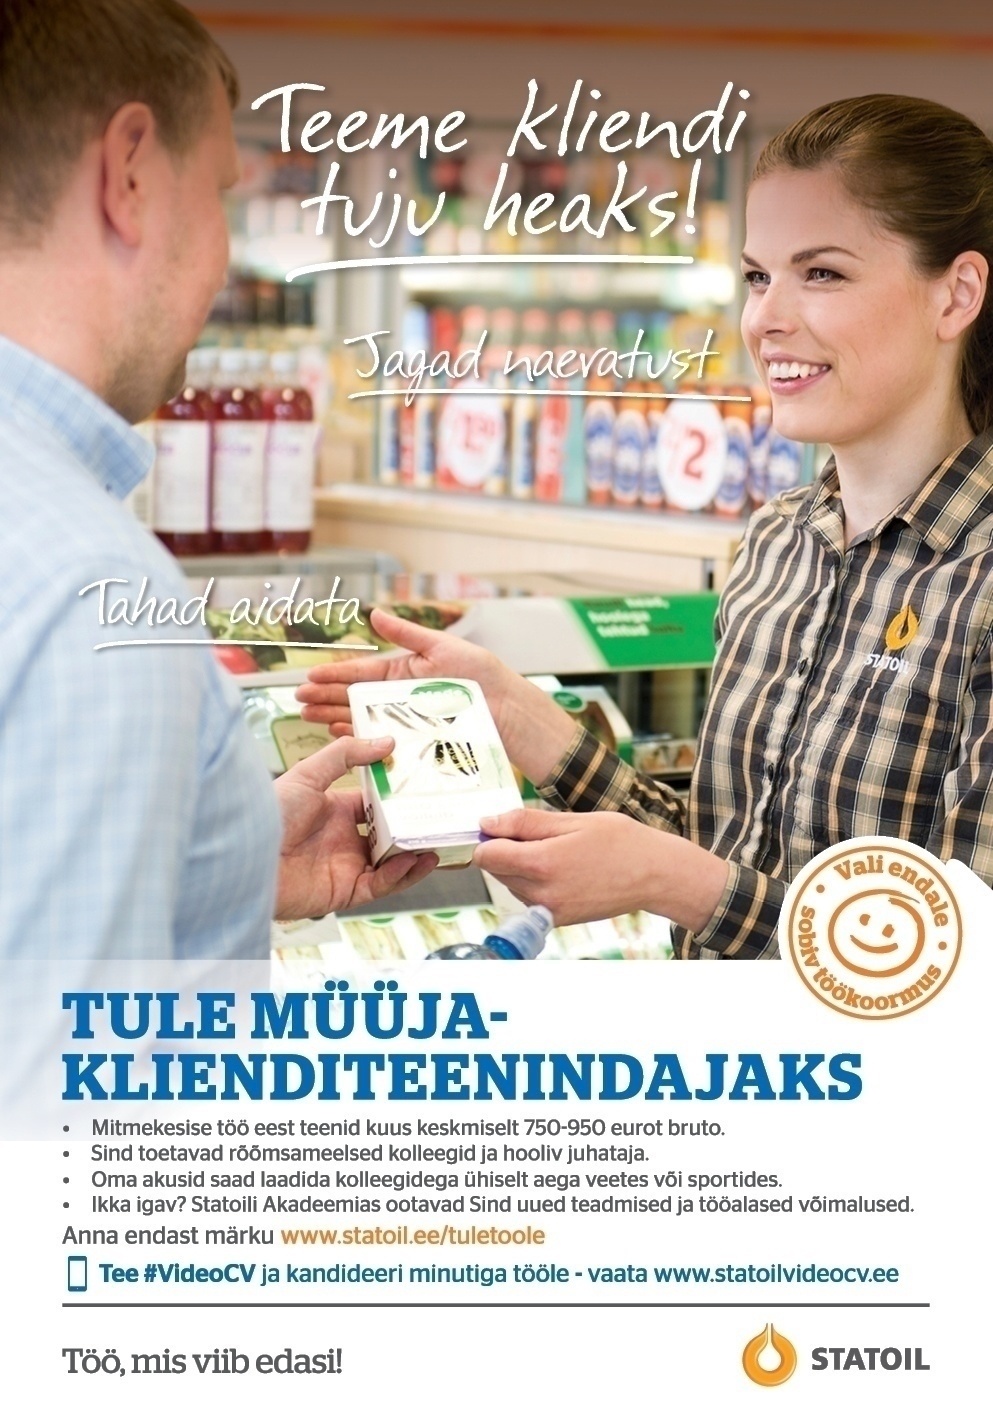 Circle K Eesti AS Müüja-klienditeenindaja Järve, Nõmme, Laagri teenindusjaama